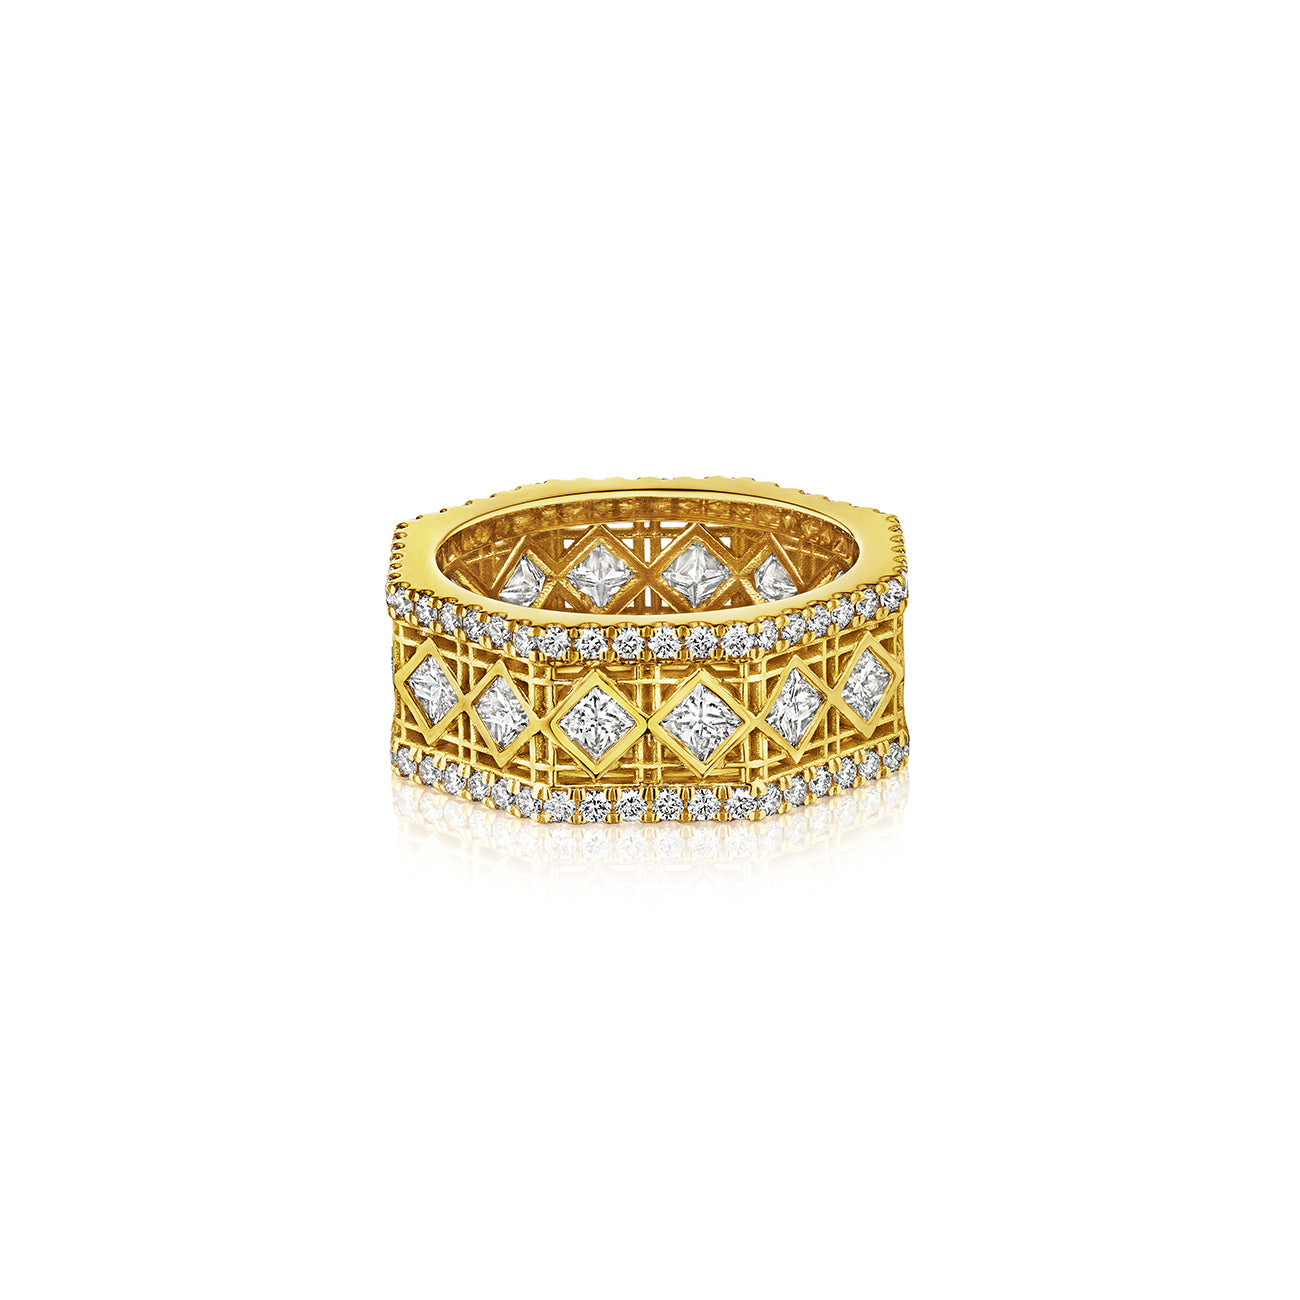 DouDou Band Ring, 18K Yellow Gold, Pavé Diamonds And Princess Cut